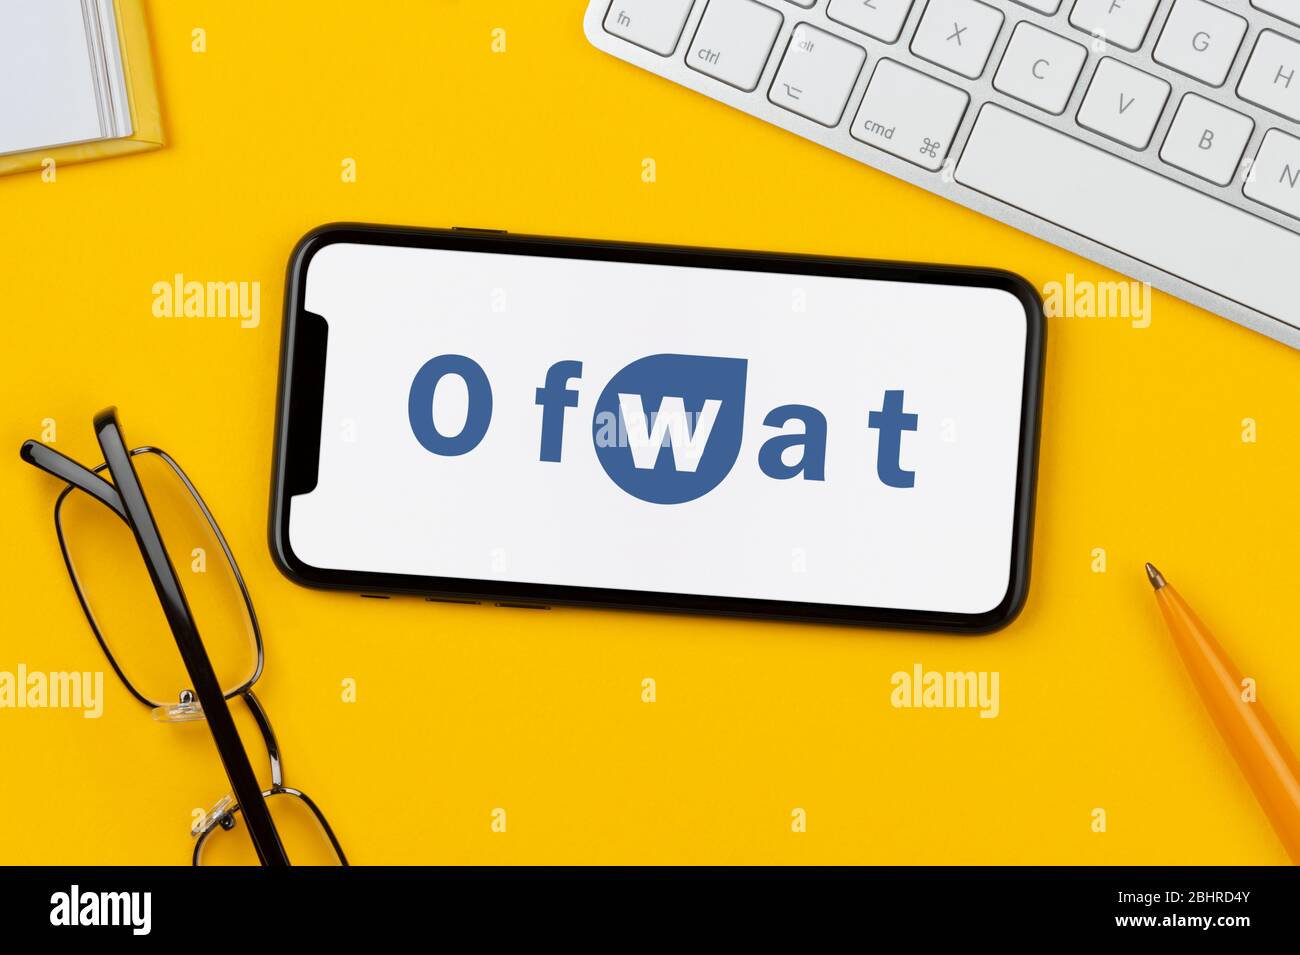 Un smartphone que muestra el logotipo de Ofwat se apoya sobre un fondo amarillo junto con un teclado, gafas, lápiz y libro (sólo para uso editorial). Foto de stock